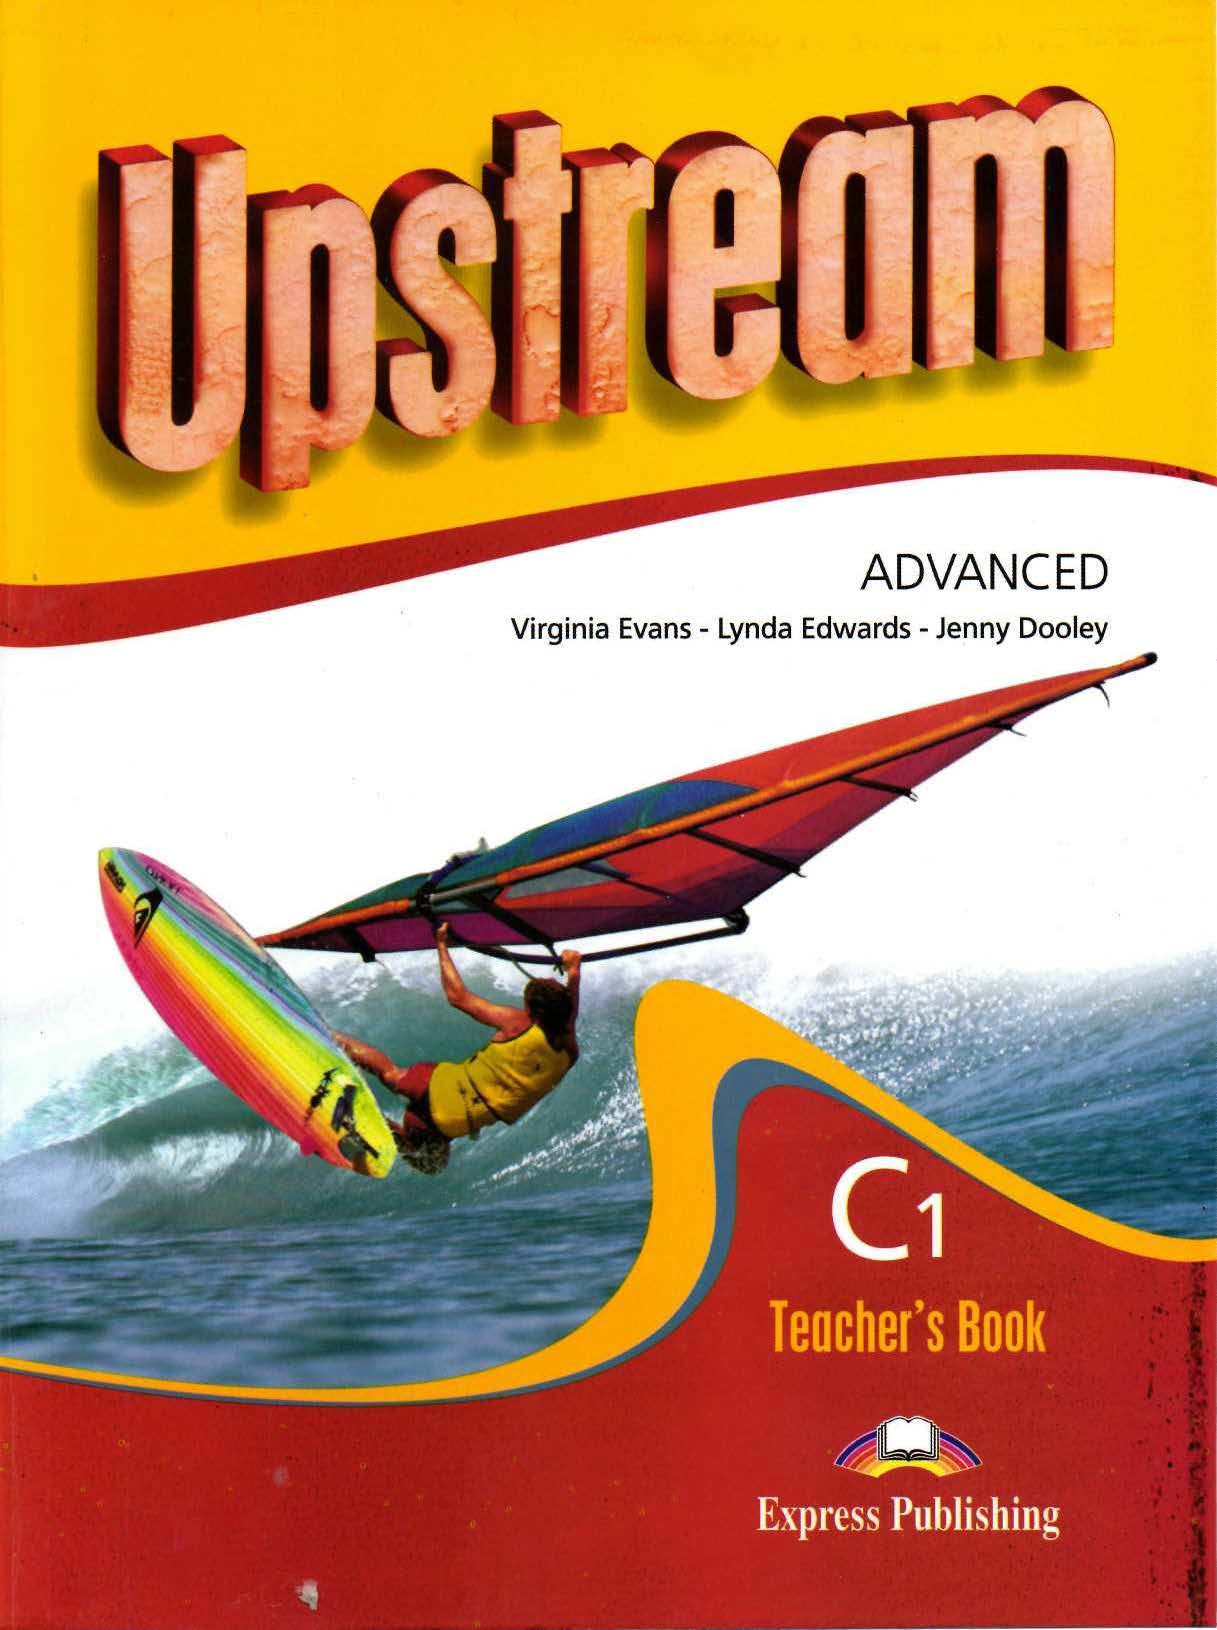 Upstream elementary. Upstream Advanced c1 teacher's book New. Upstream. Advanced c1. Student's book книга. Upstream учебник. Upstream Advanced c1.